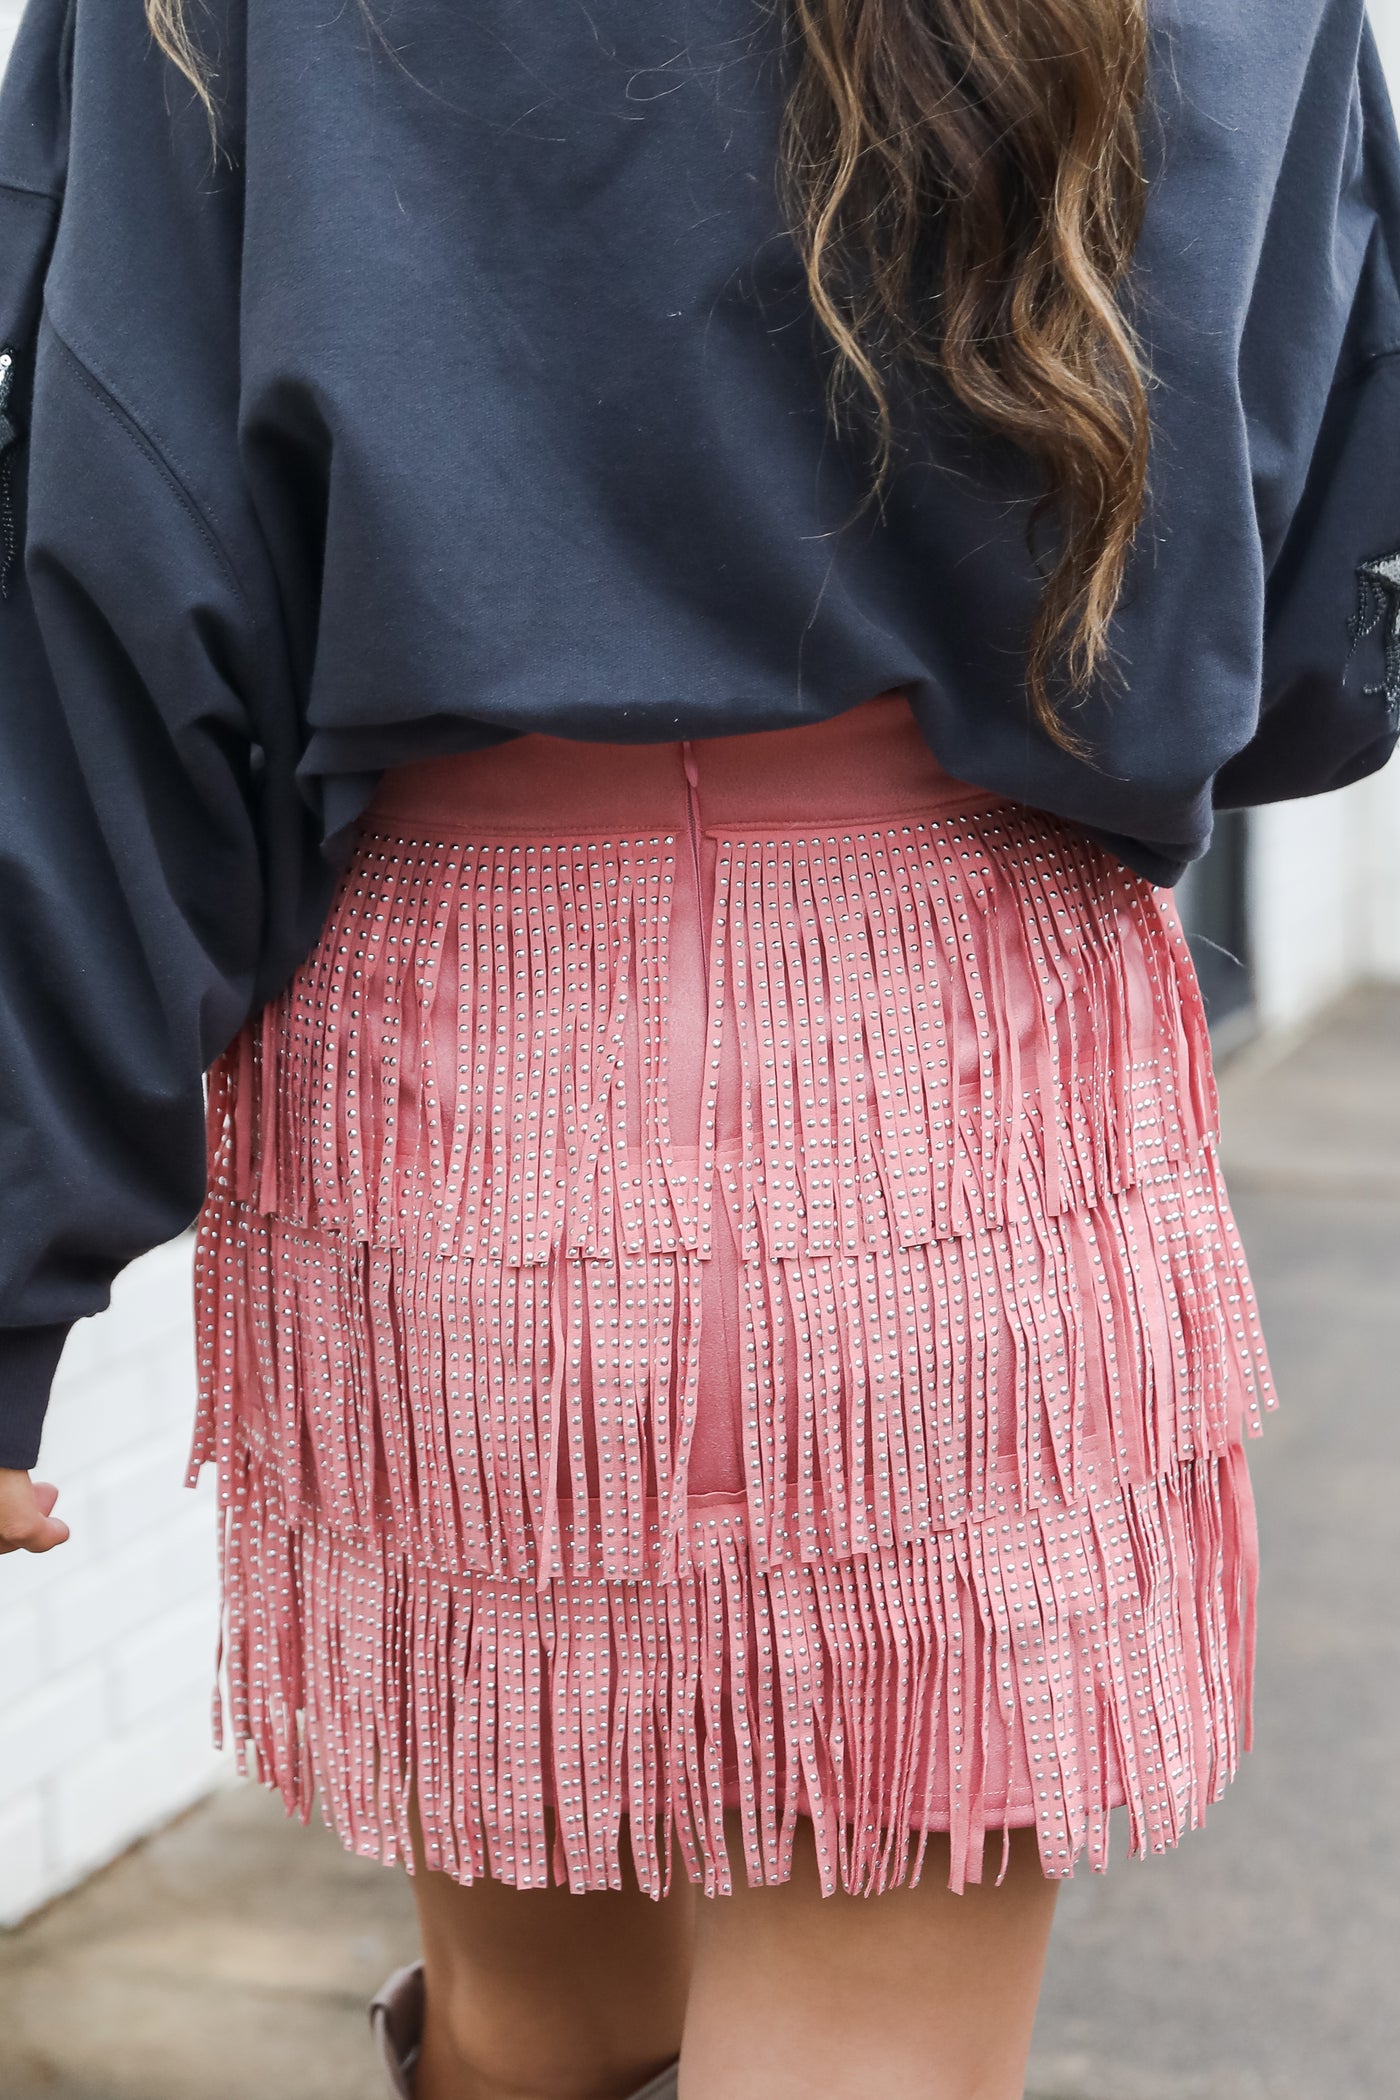 Fringe Mini Skirt back view